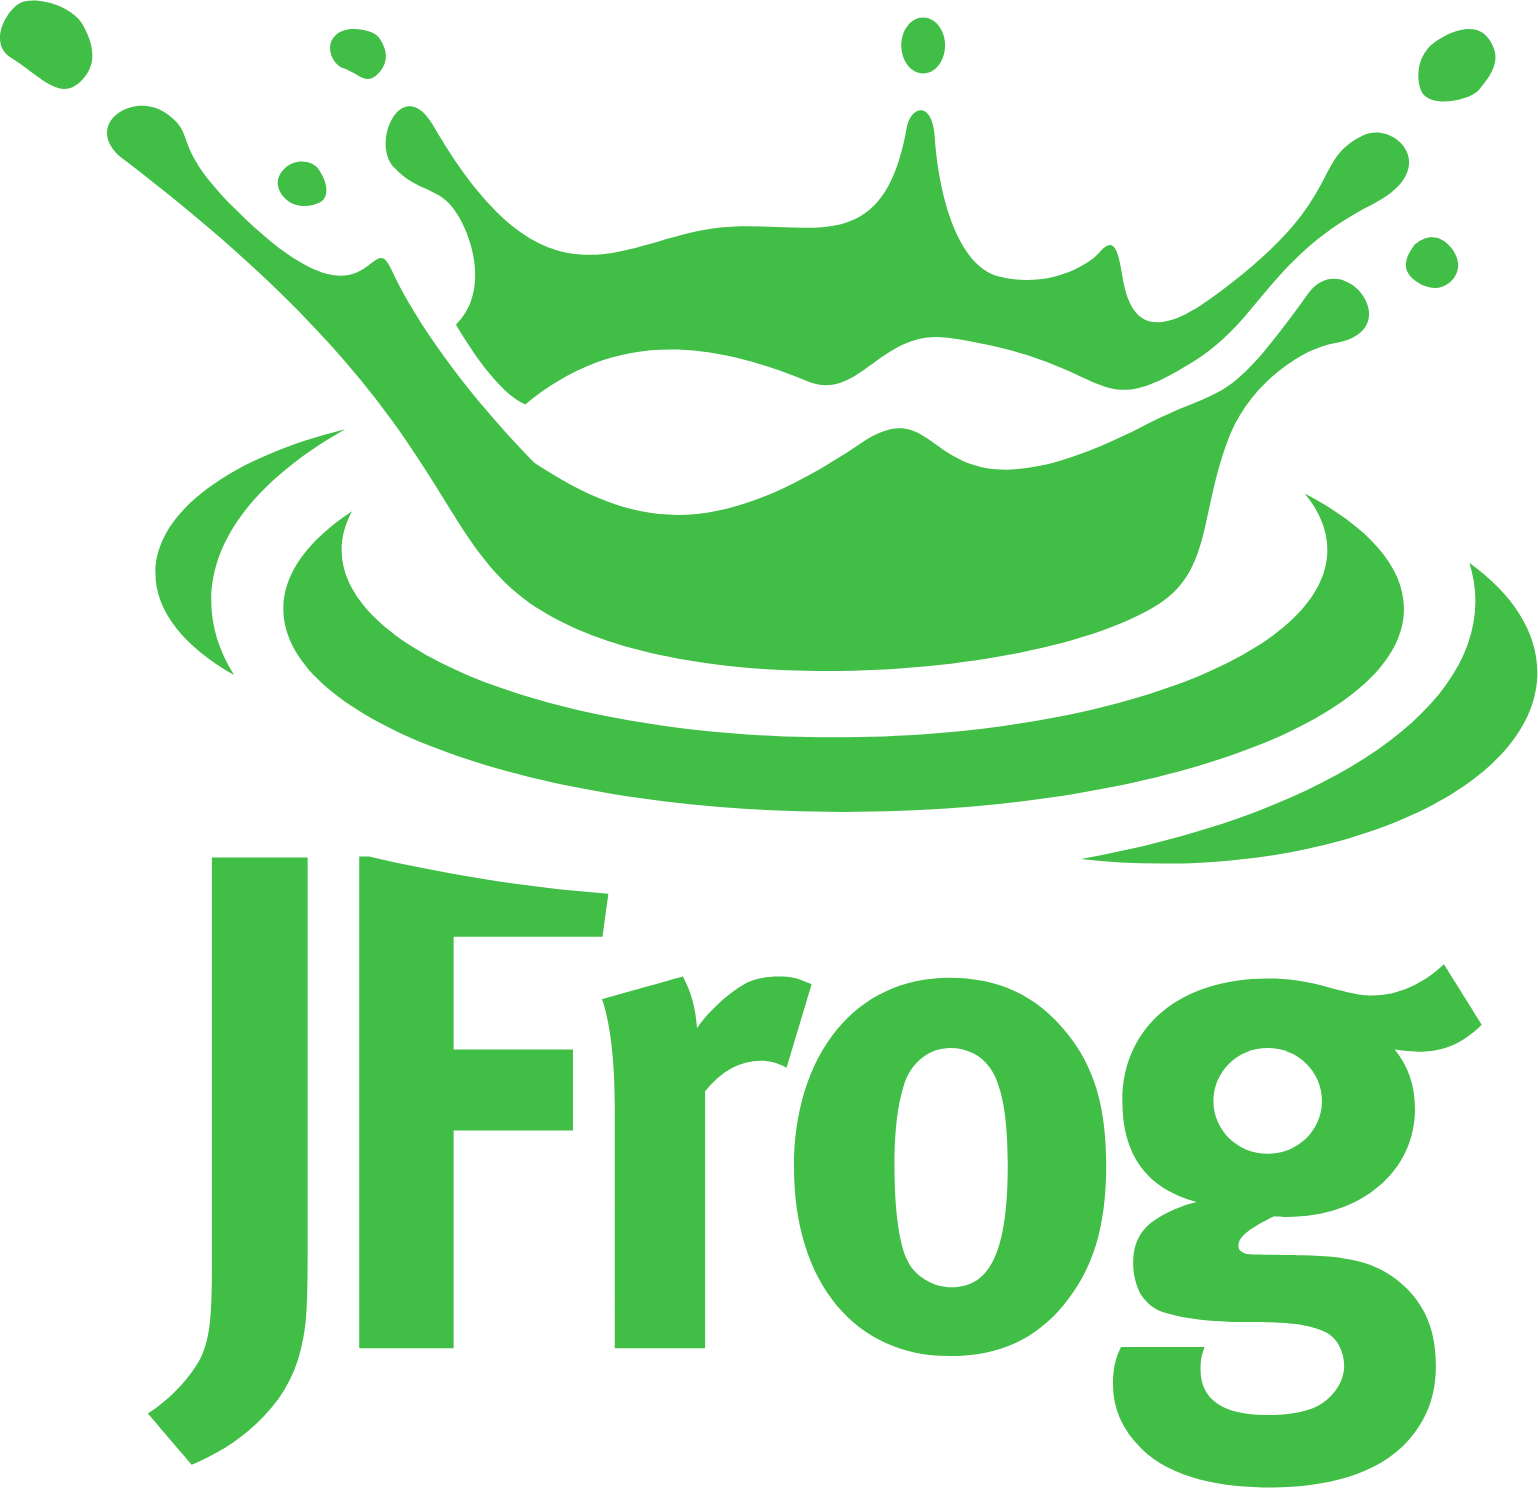 Jfrog logo (PNG transparent)